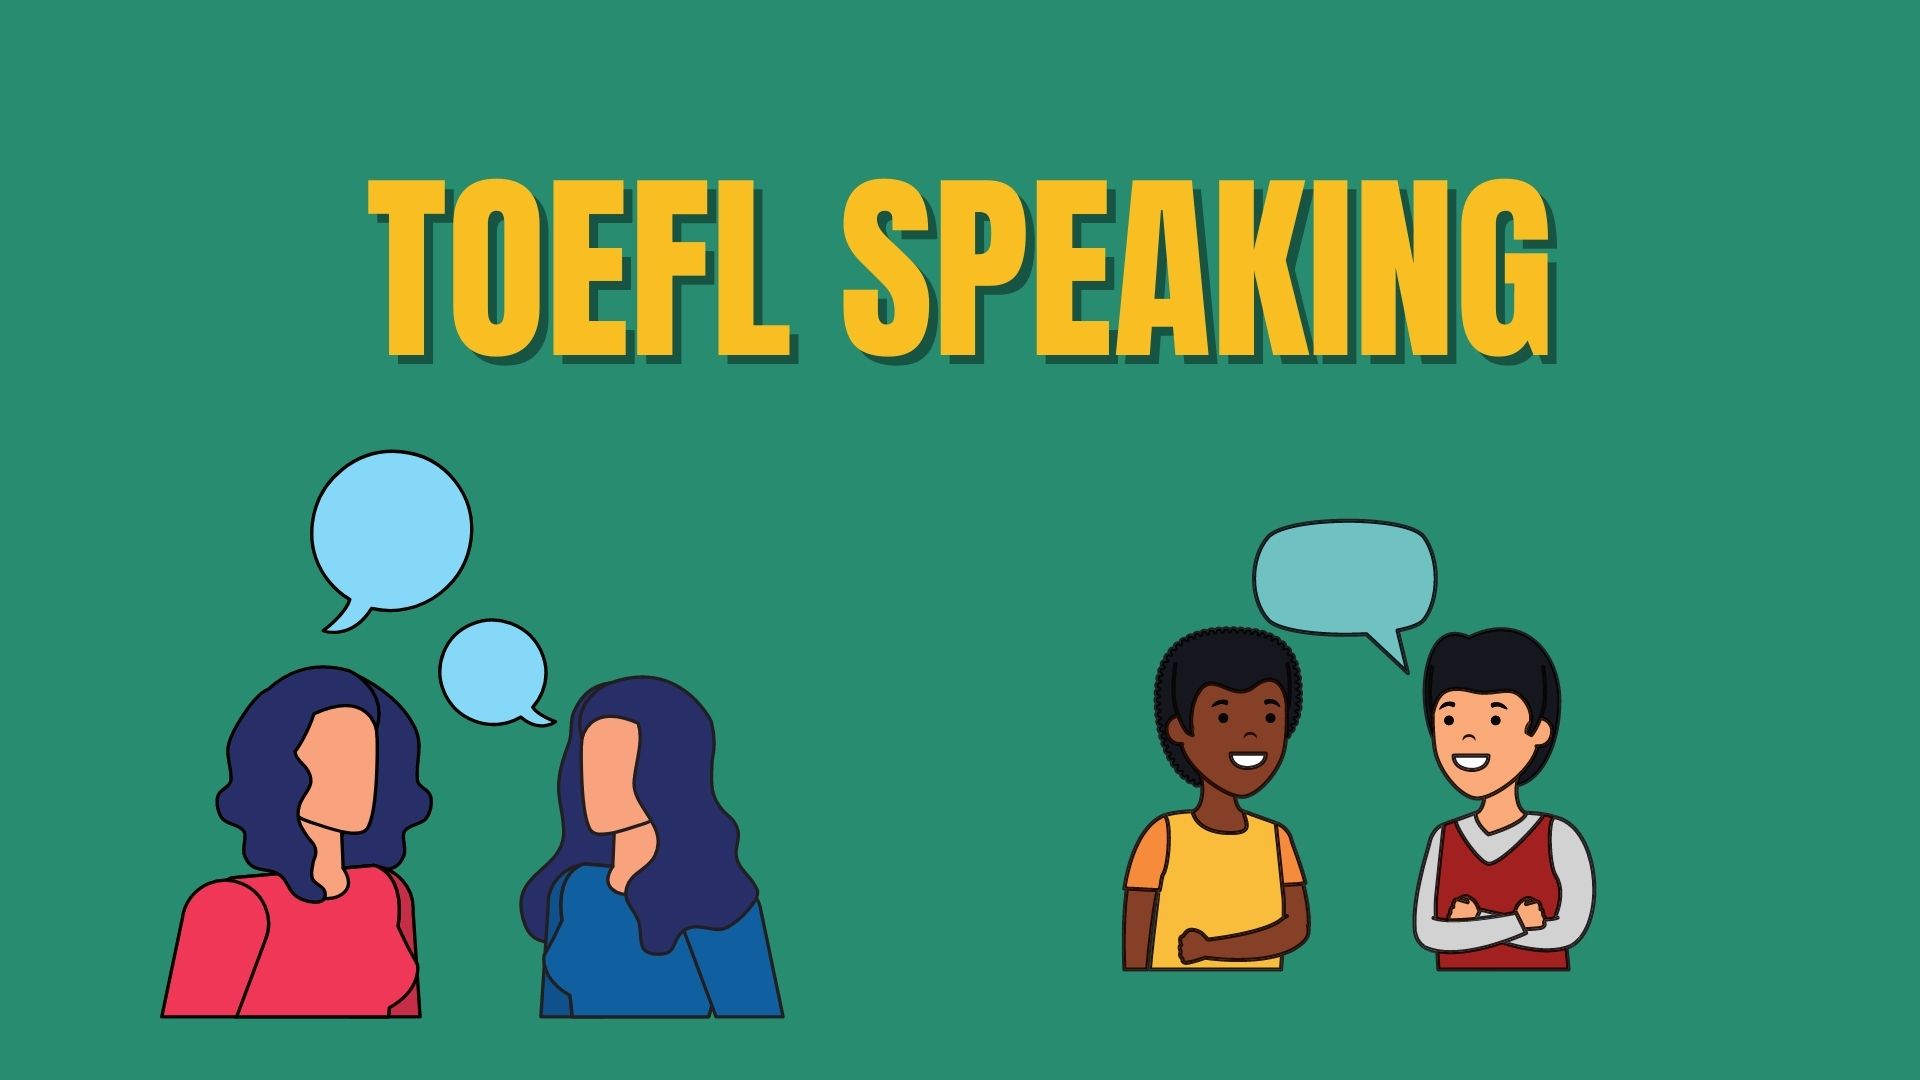 TOEFL Speaking là kỹ năng gây đau đầu cho nhiều thí sinh